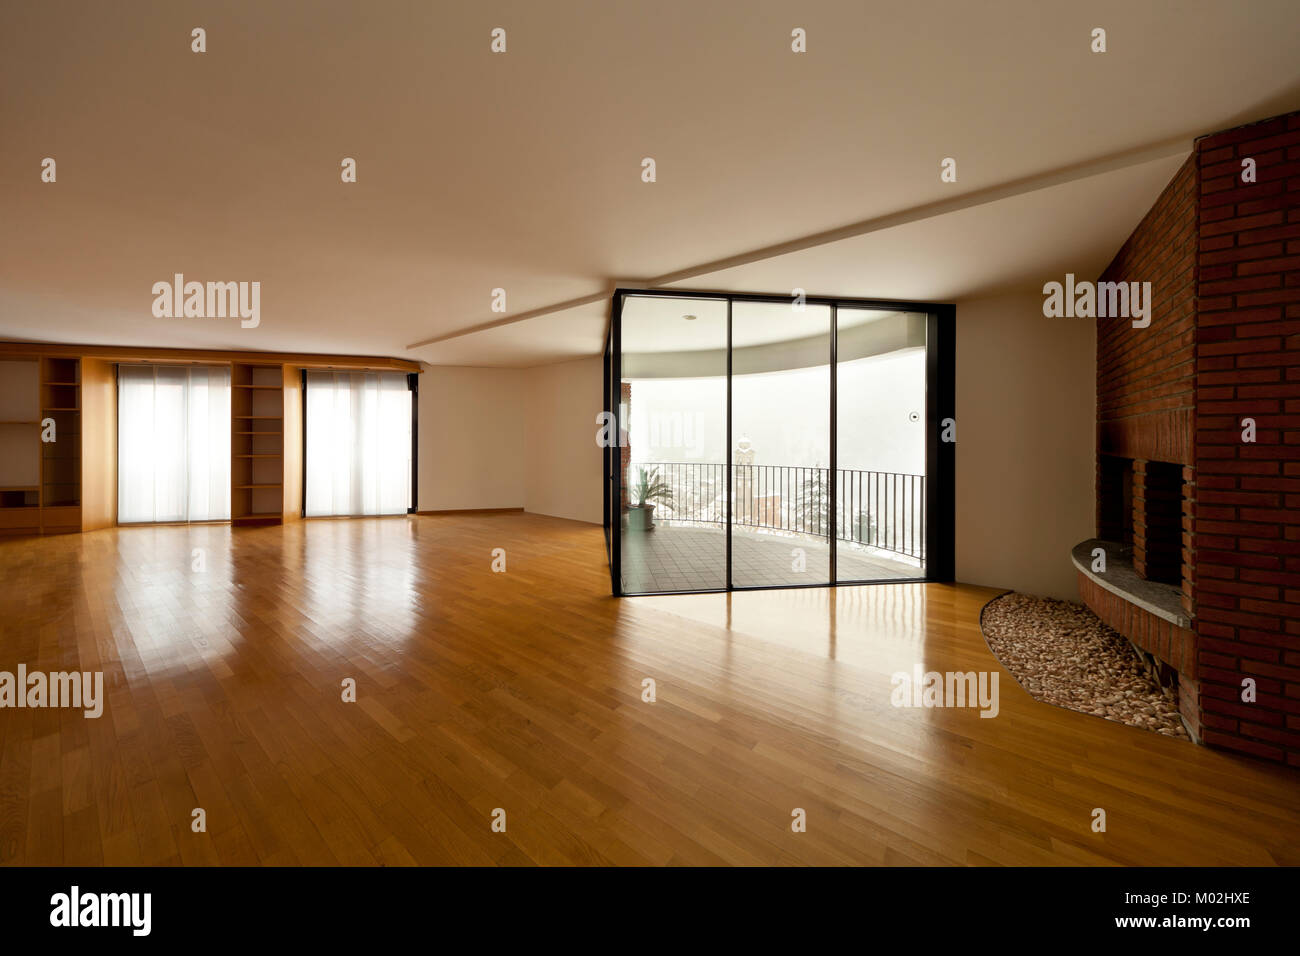 Bellissimo appartamento imterior, stanza vuota con windows Foto Stock